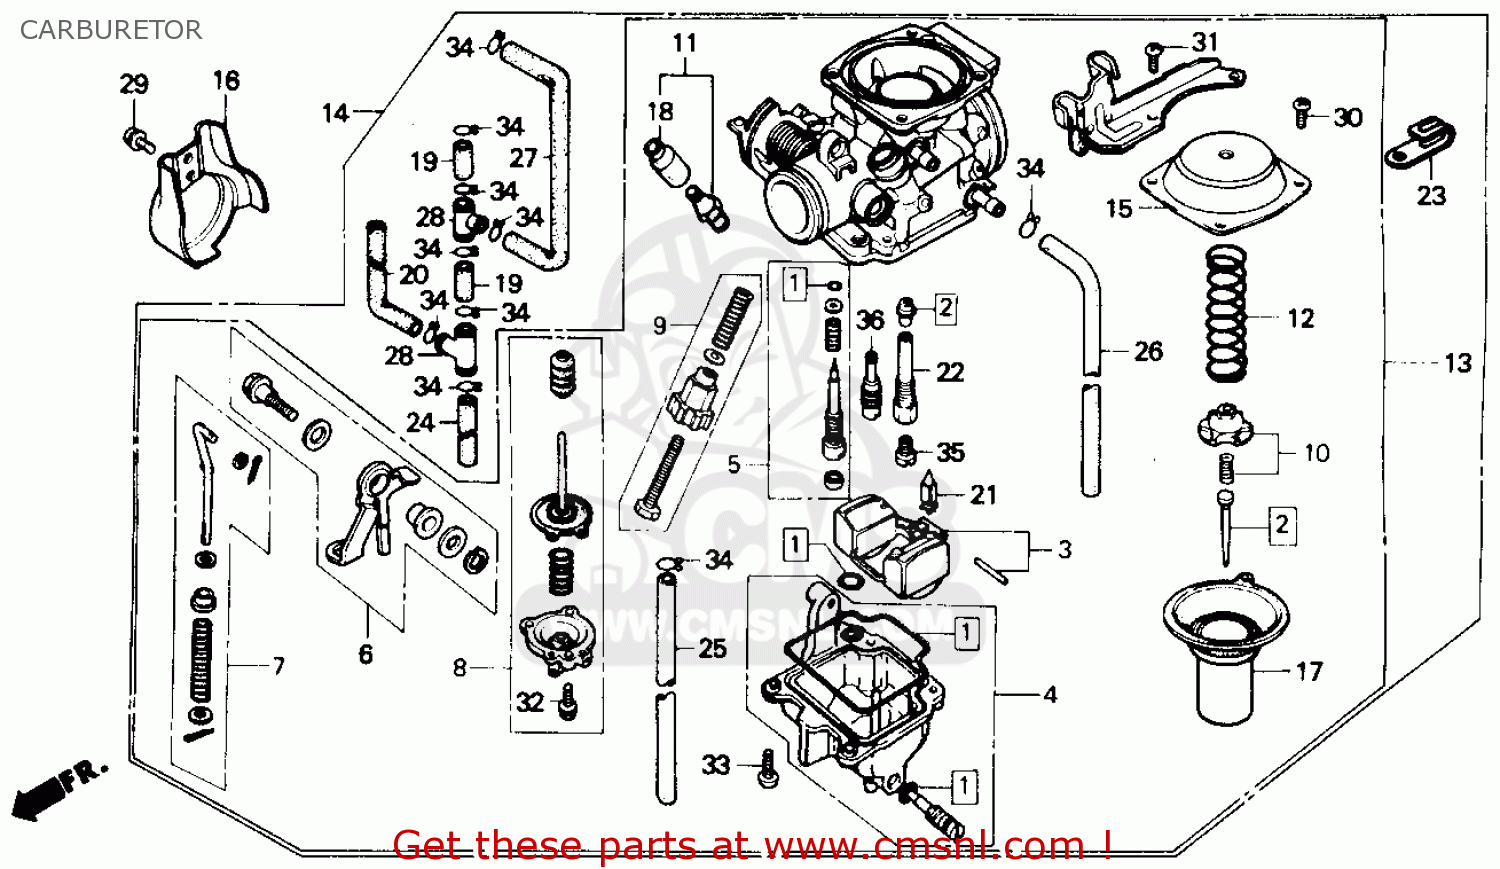 1986 Honda rebel carb rebuild kit #7